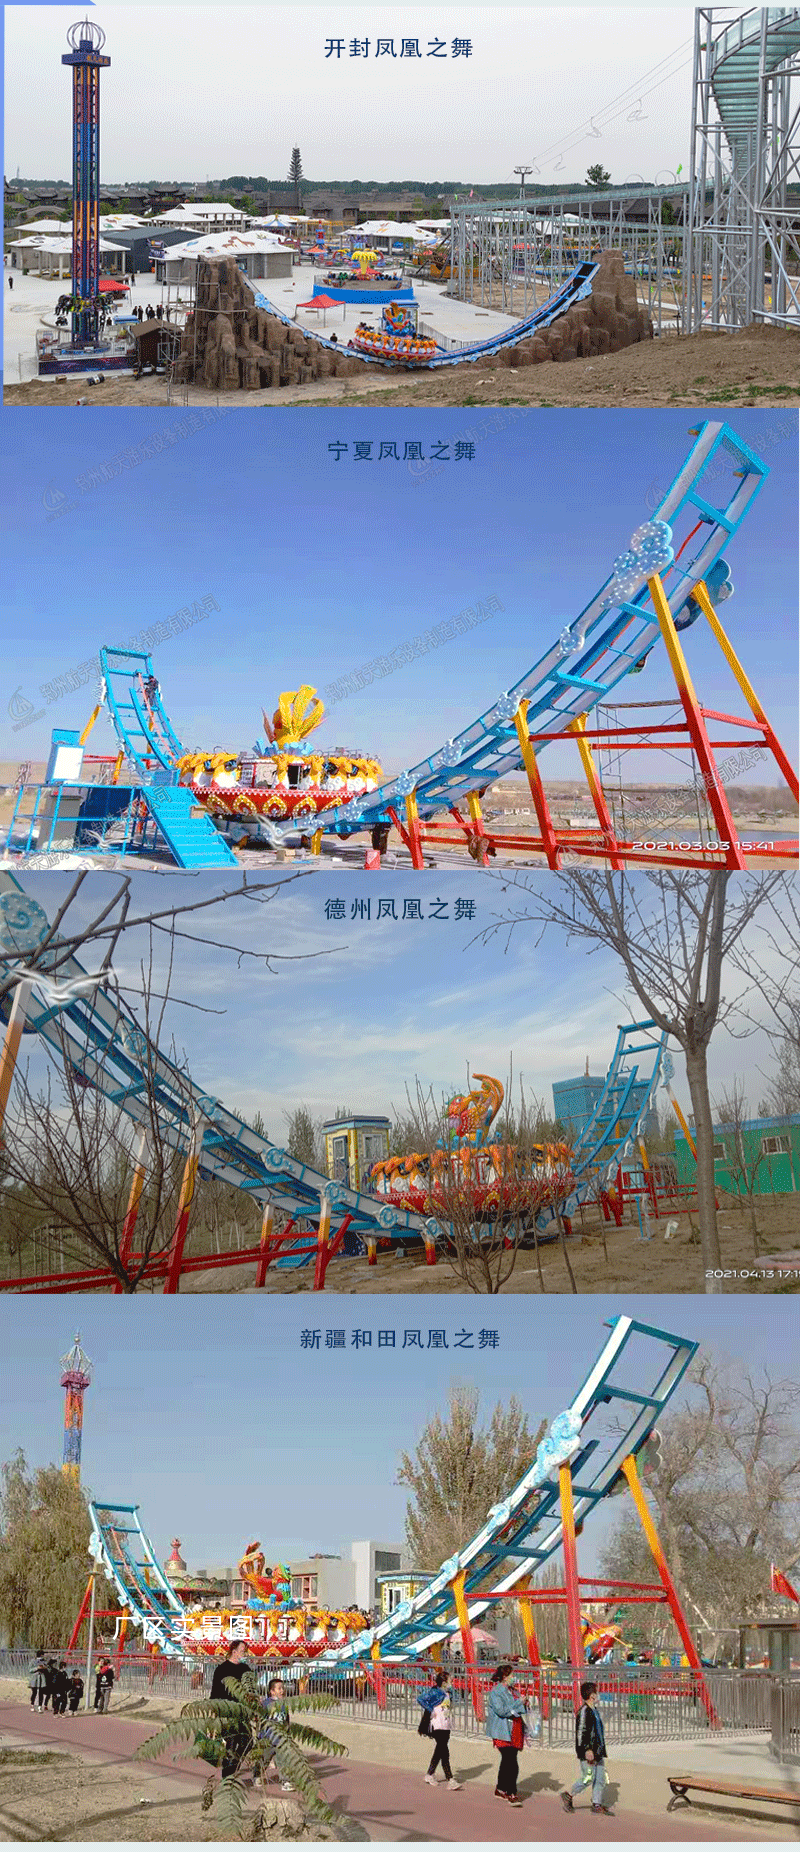 郑州新型大型轨道飞碟游乐园设施航天游乐报价 4